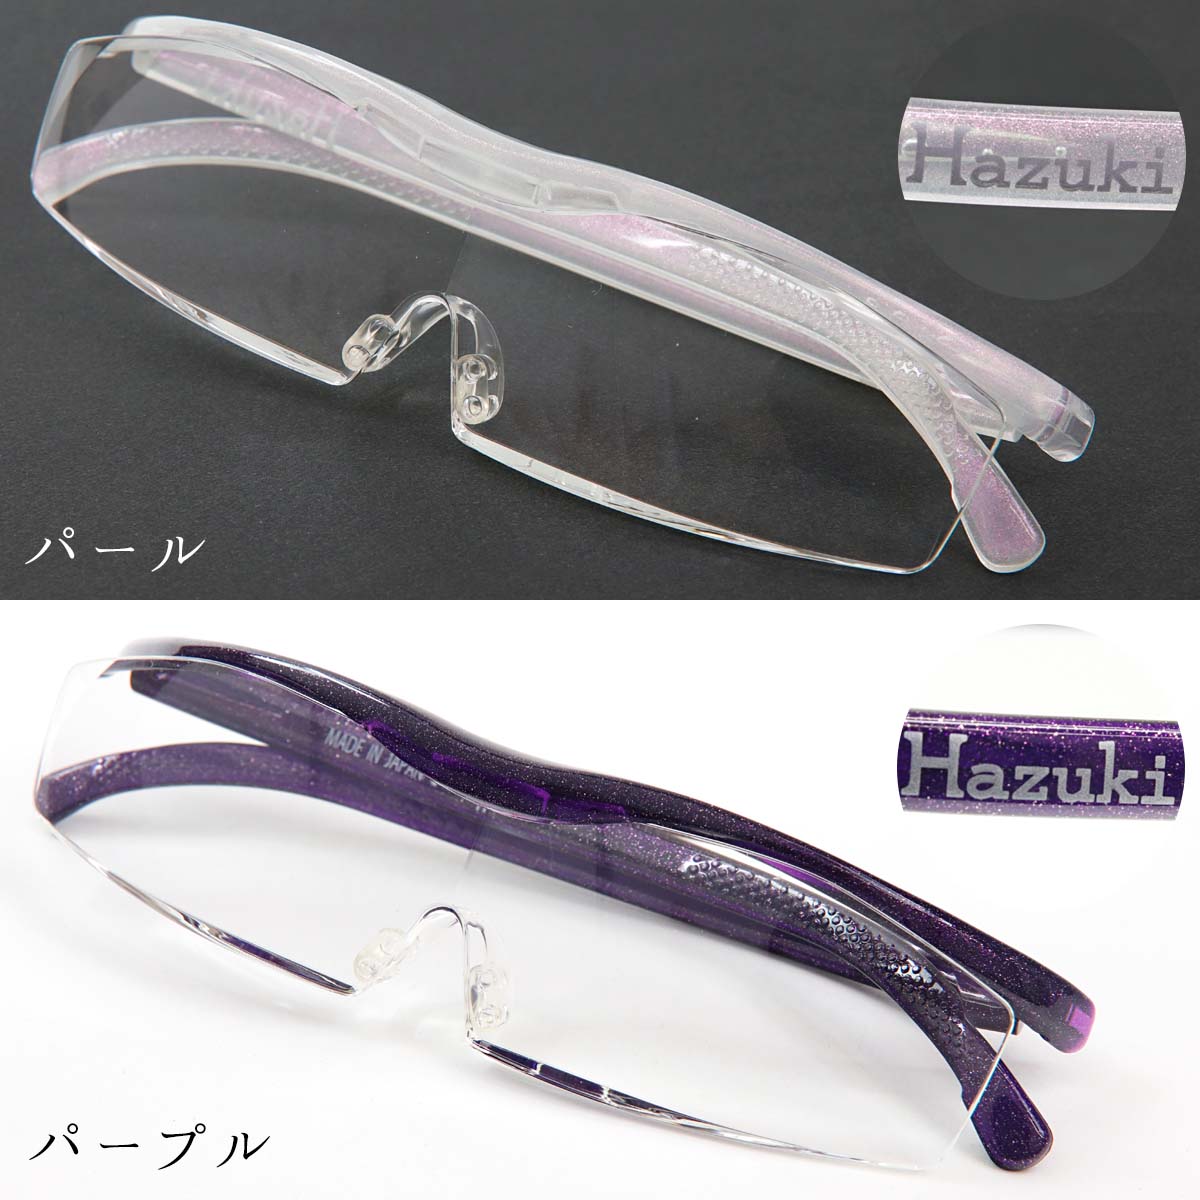 Hazuki ハズキルーペ コンパクト 拡大率 1.85倍 1.6倍 1.32倍 選べる10色 長時間使用しても疲れにくい メガネ型 拡大鏡 踏んでも壊れない 様々なシーンで使える